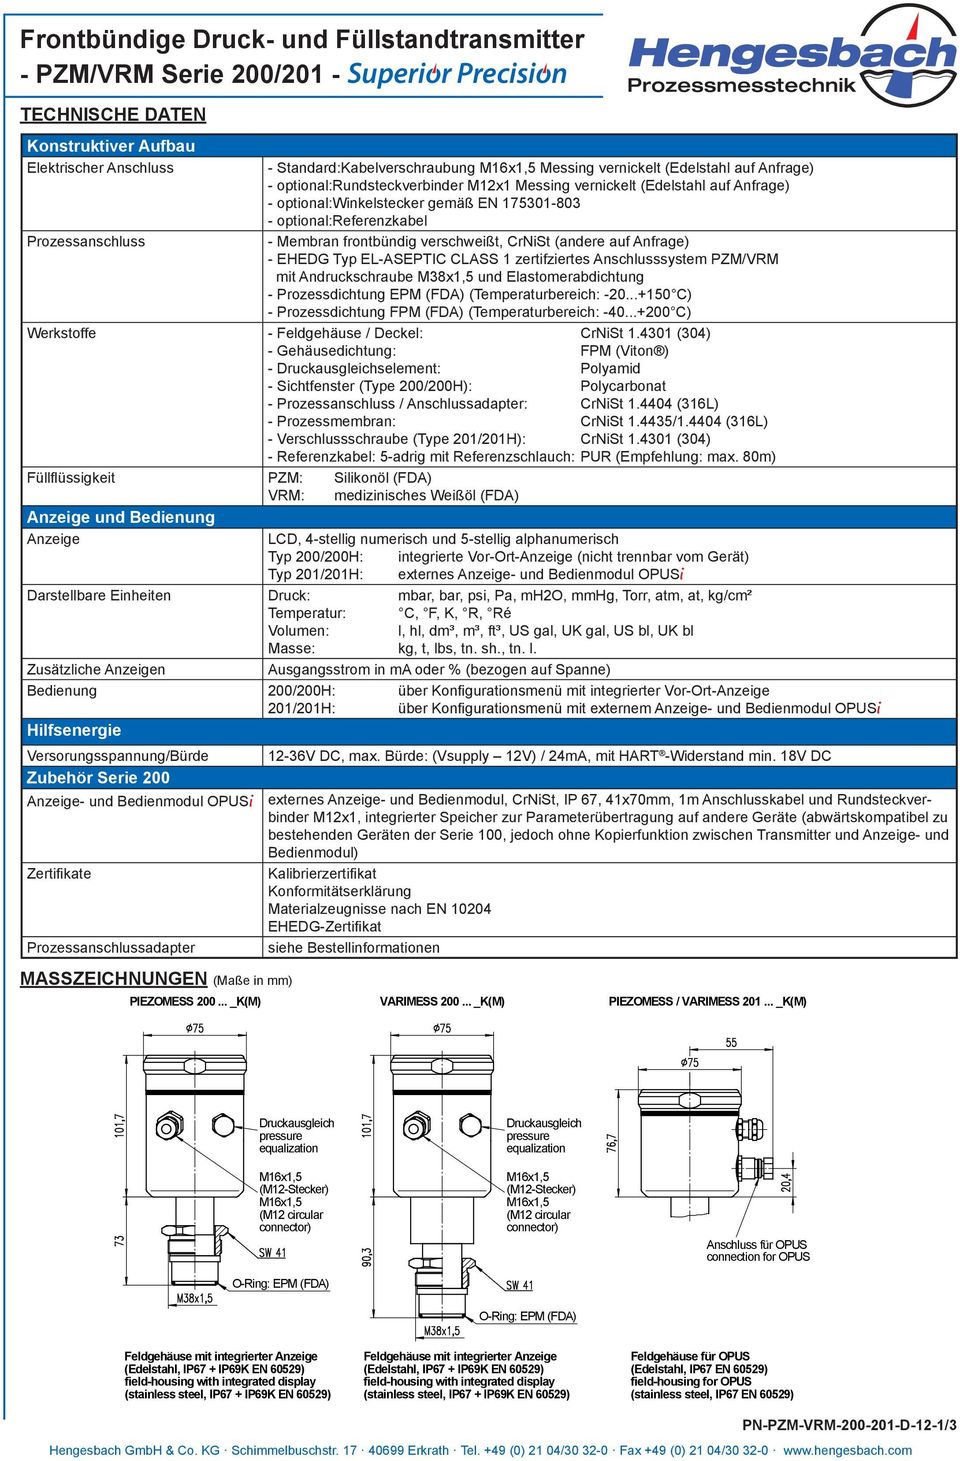 CLASS 1 zertifziertes Anschlusssystem PZM/VRM mit Andruckschraube M38x1,5 und Elastomerabdichtung - Prozessdichtung EPM (FDA) (Temperaturbereich: -20.